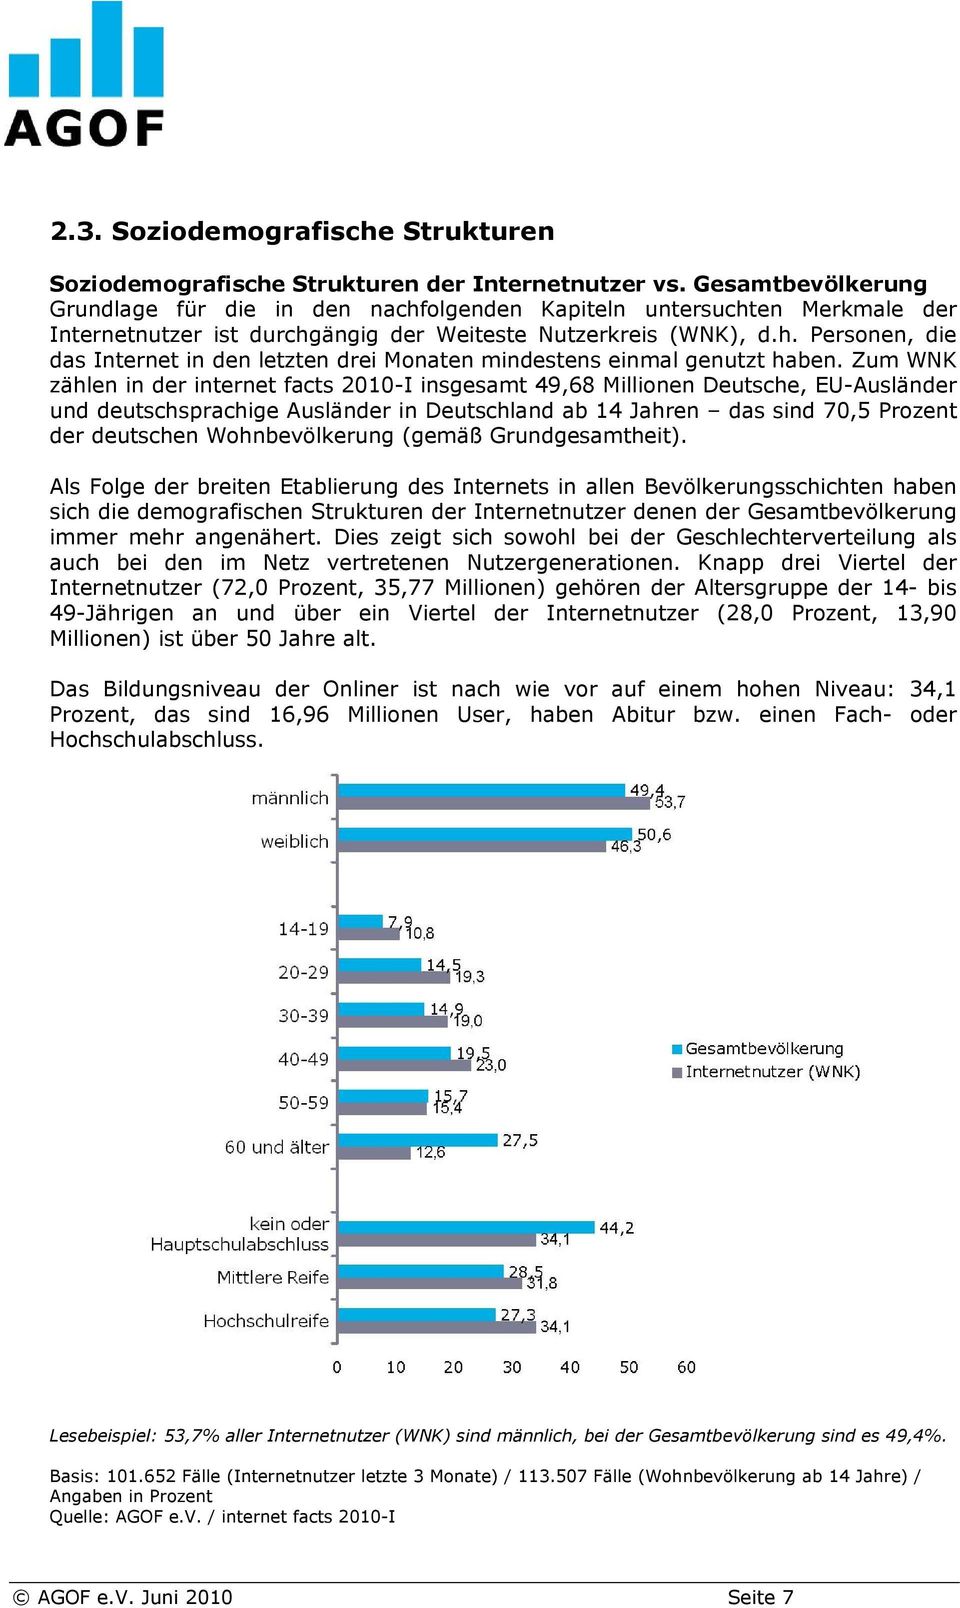 Zum WNK zählen in der internet facts 2010-I insgesamt 49,68 Millionen Deutsche, EU-Ausländer und deutschsprachige Ausländer in Deutschland ab 14 Jahren das sind 70,5 Prozent der deutschen